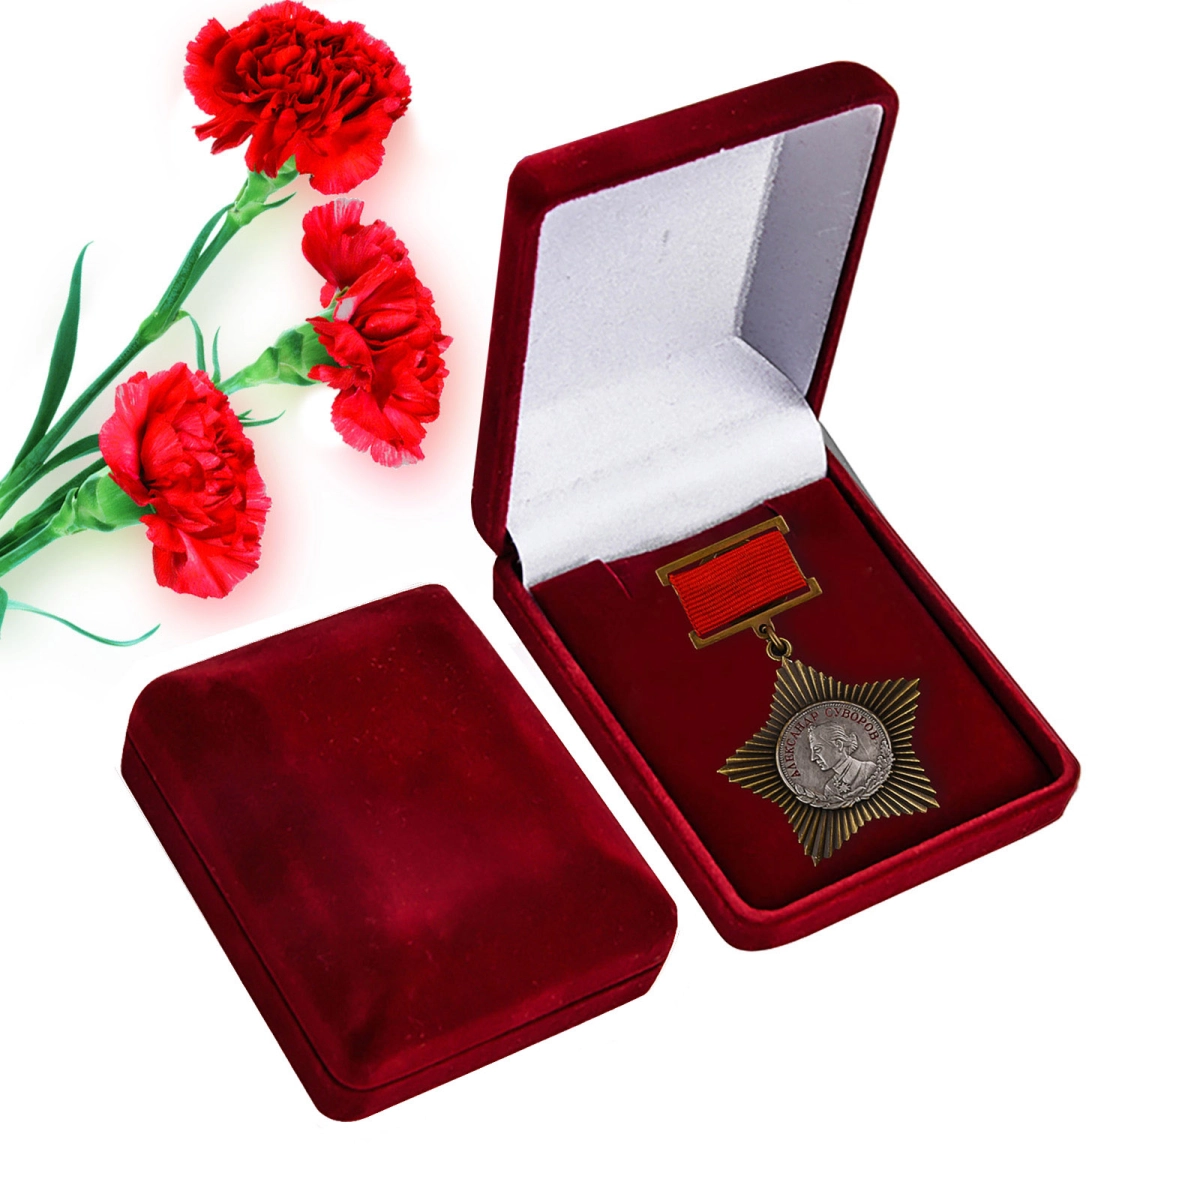 Сувенирный орден Суворова 2-й степени на колодке, в бархатистом футляре №647А(412)